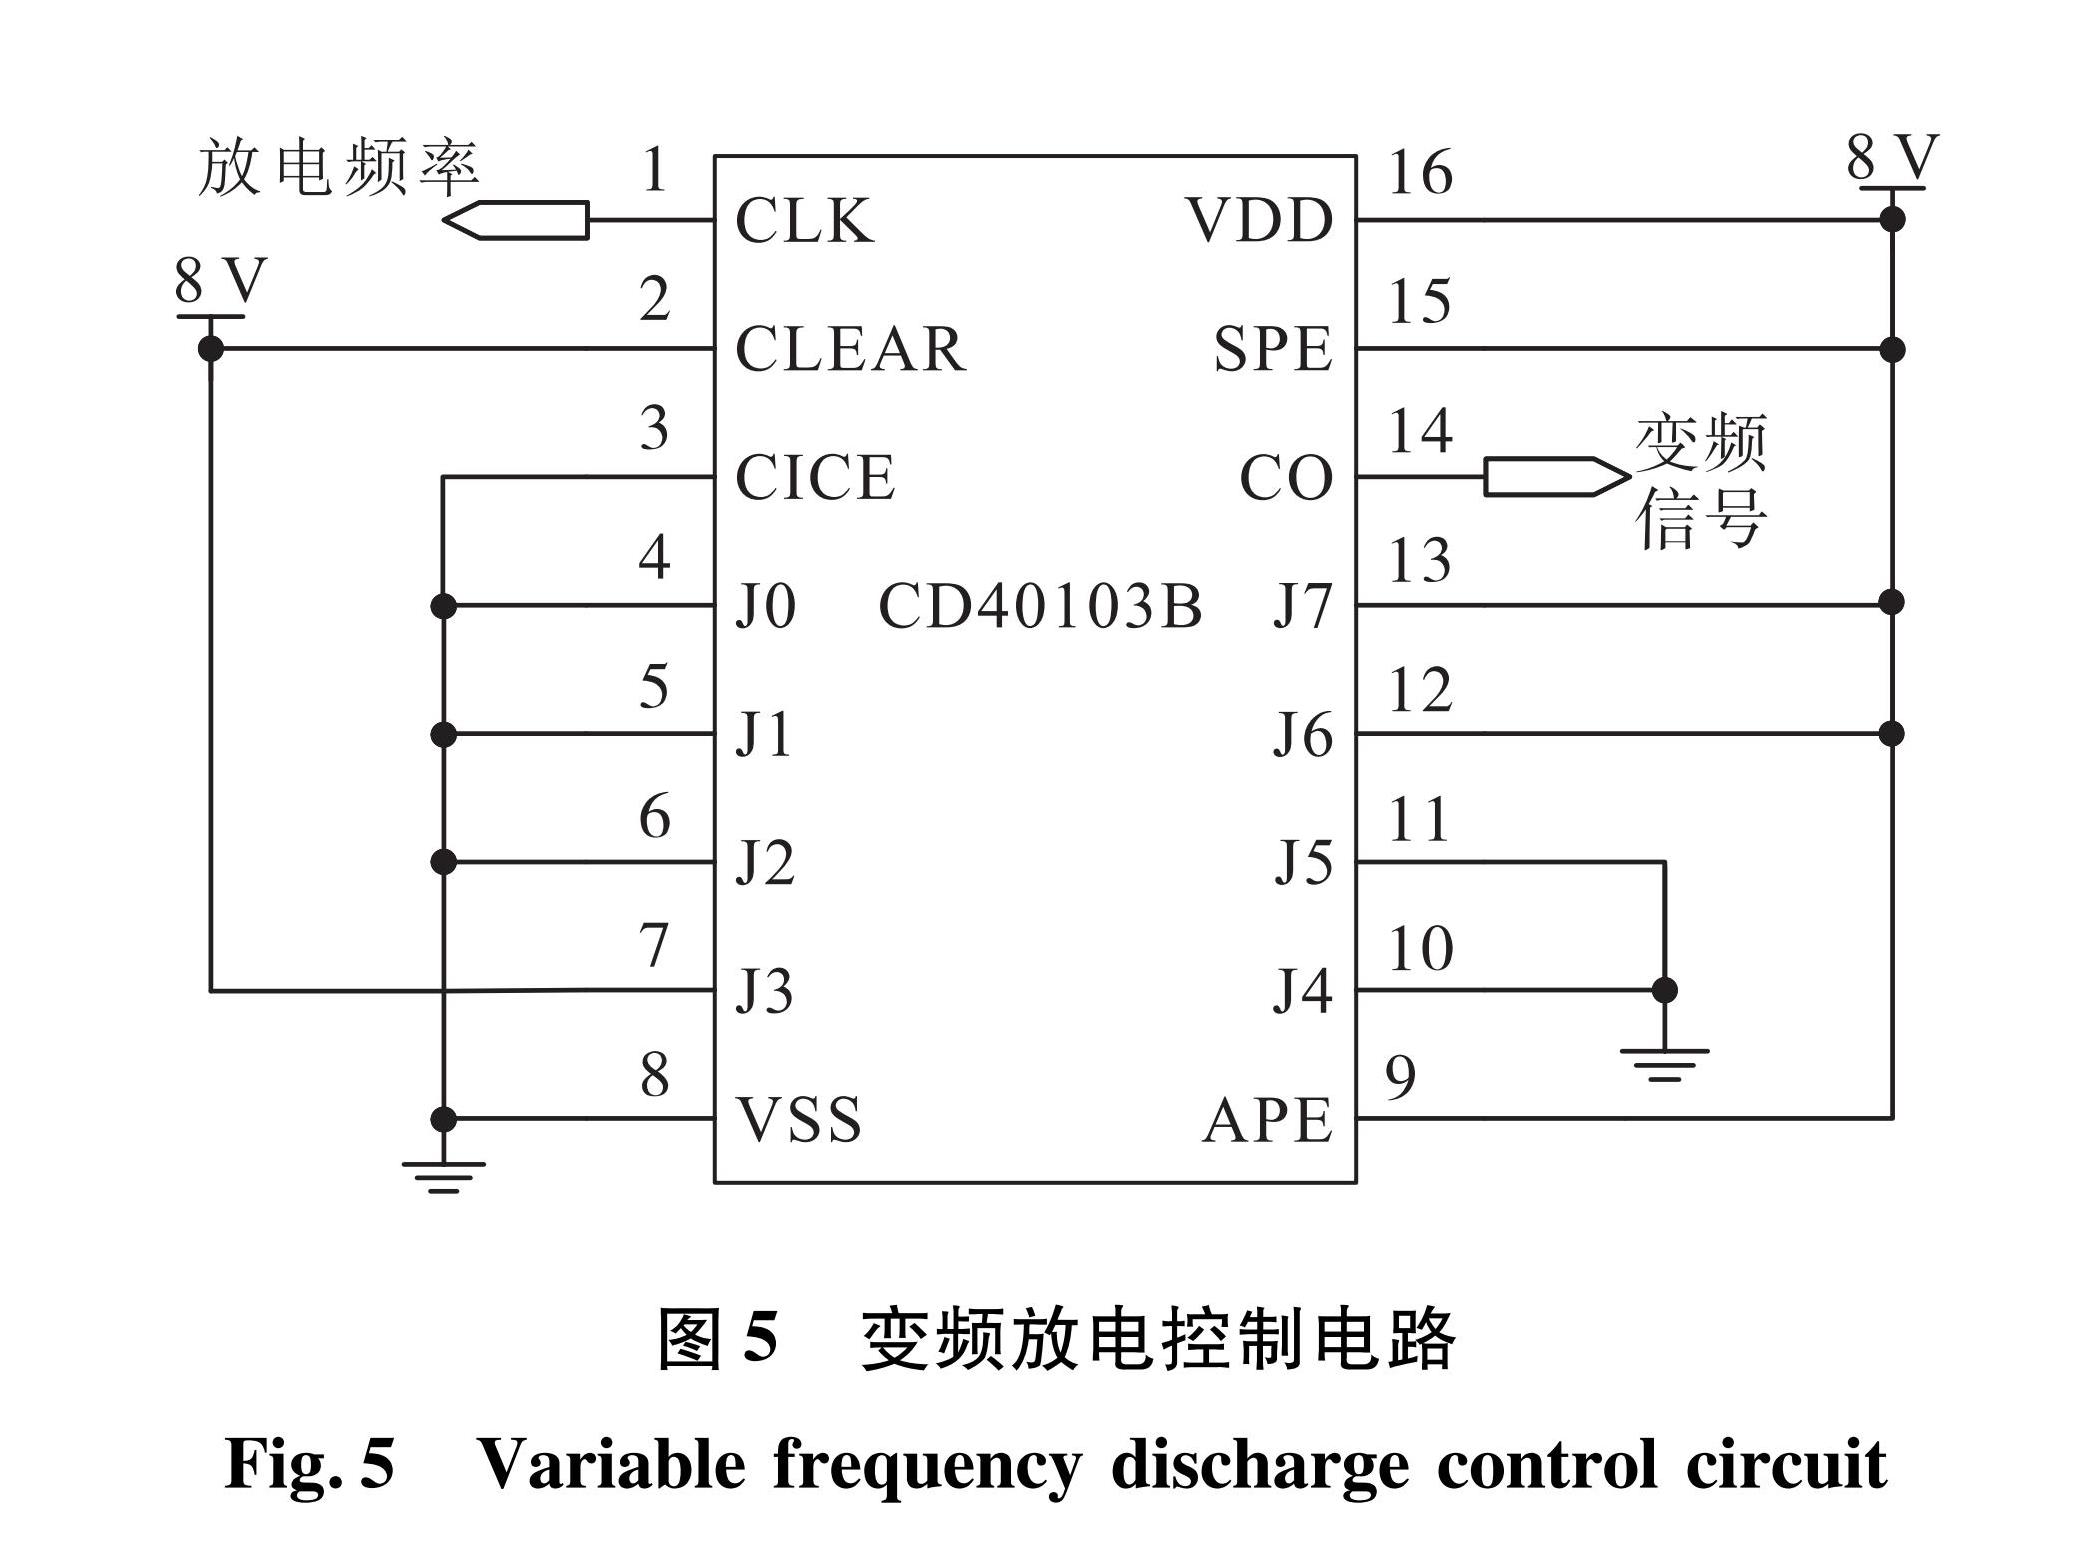 图5 变频放电控制电路<br/>Fig.5 Variable frequency discharge control circuit